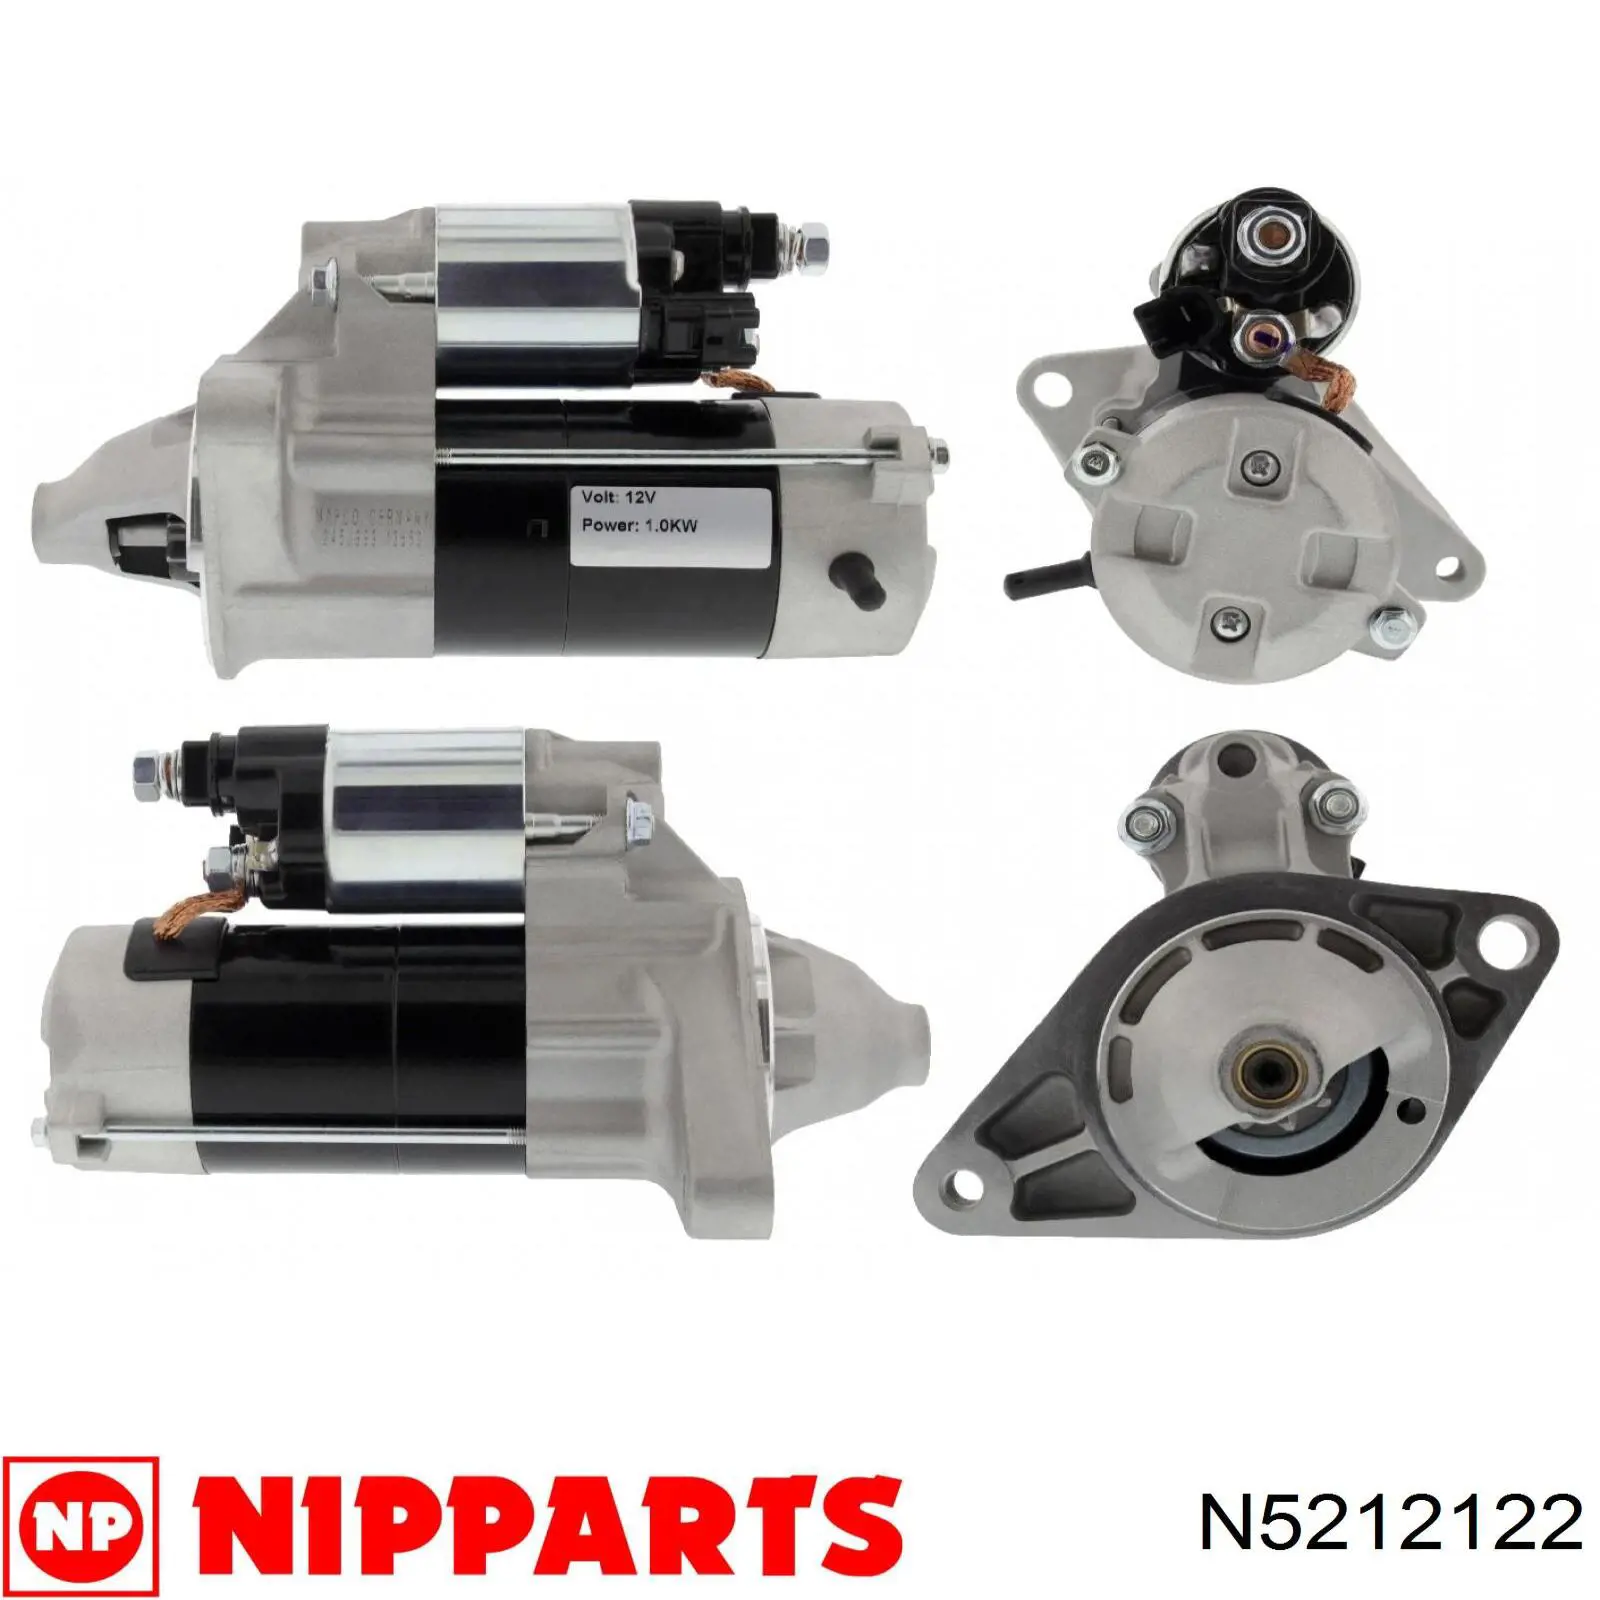 N5212122 Nipparts motor de arranque